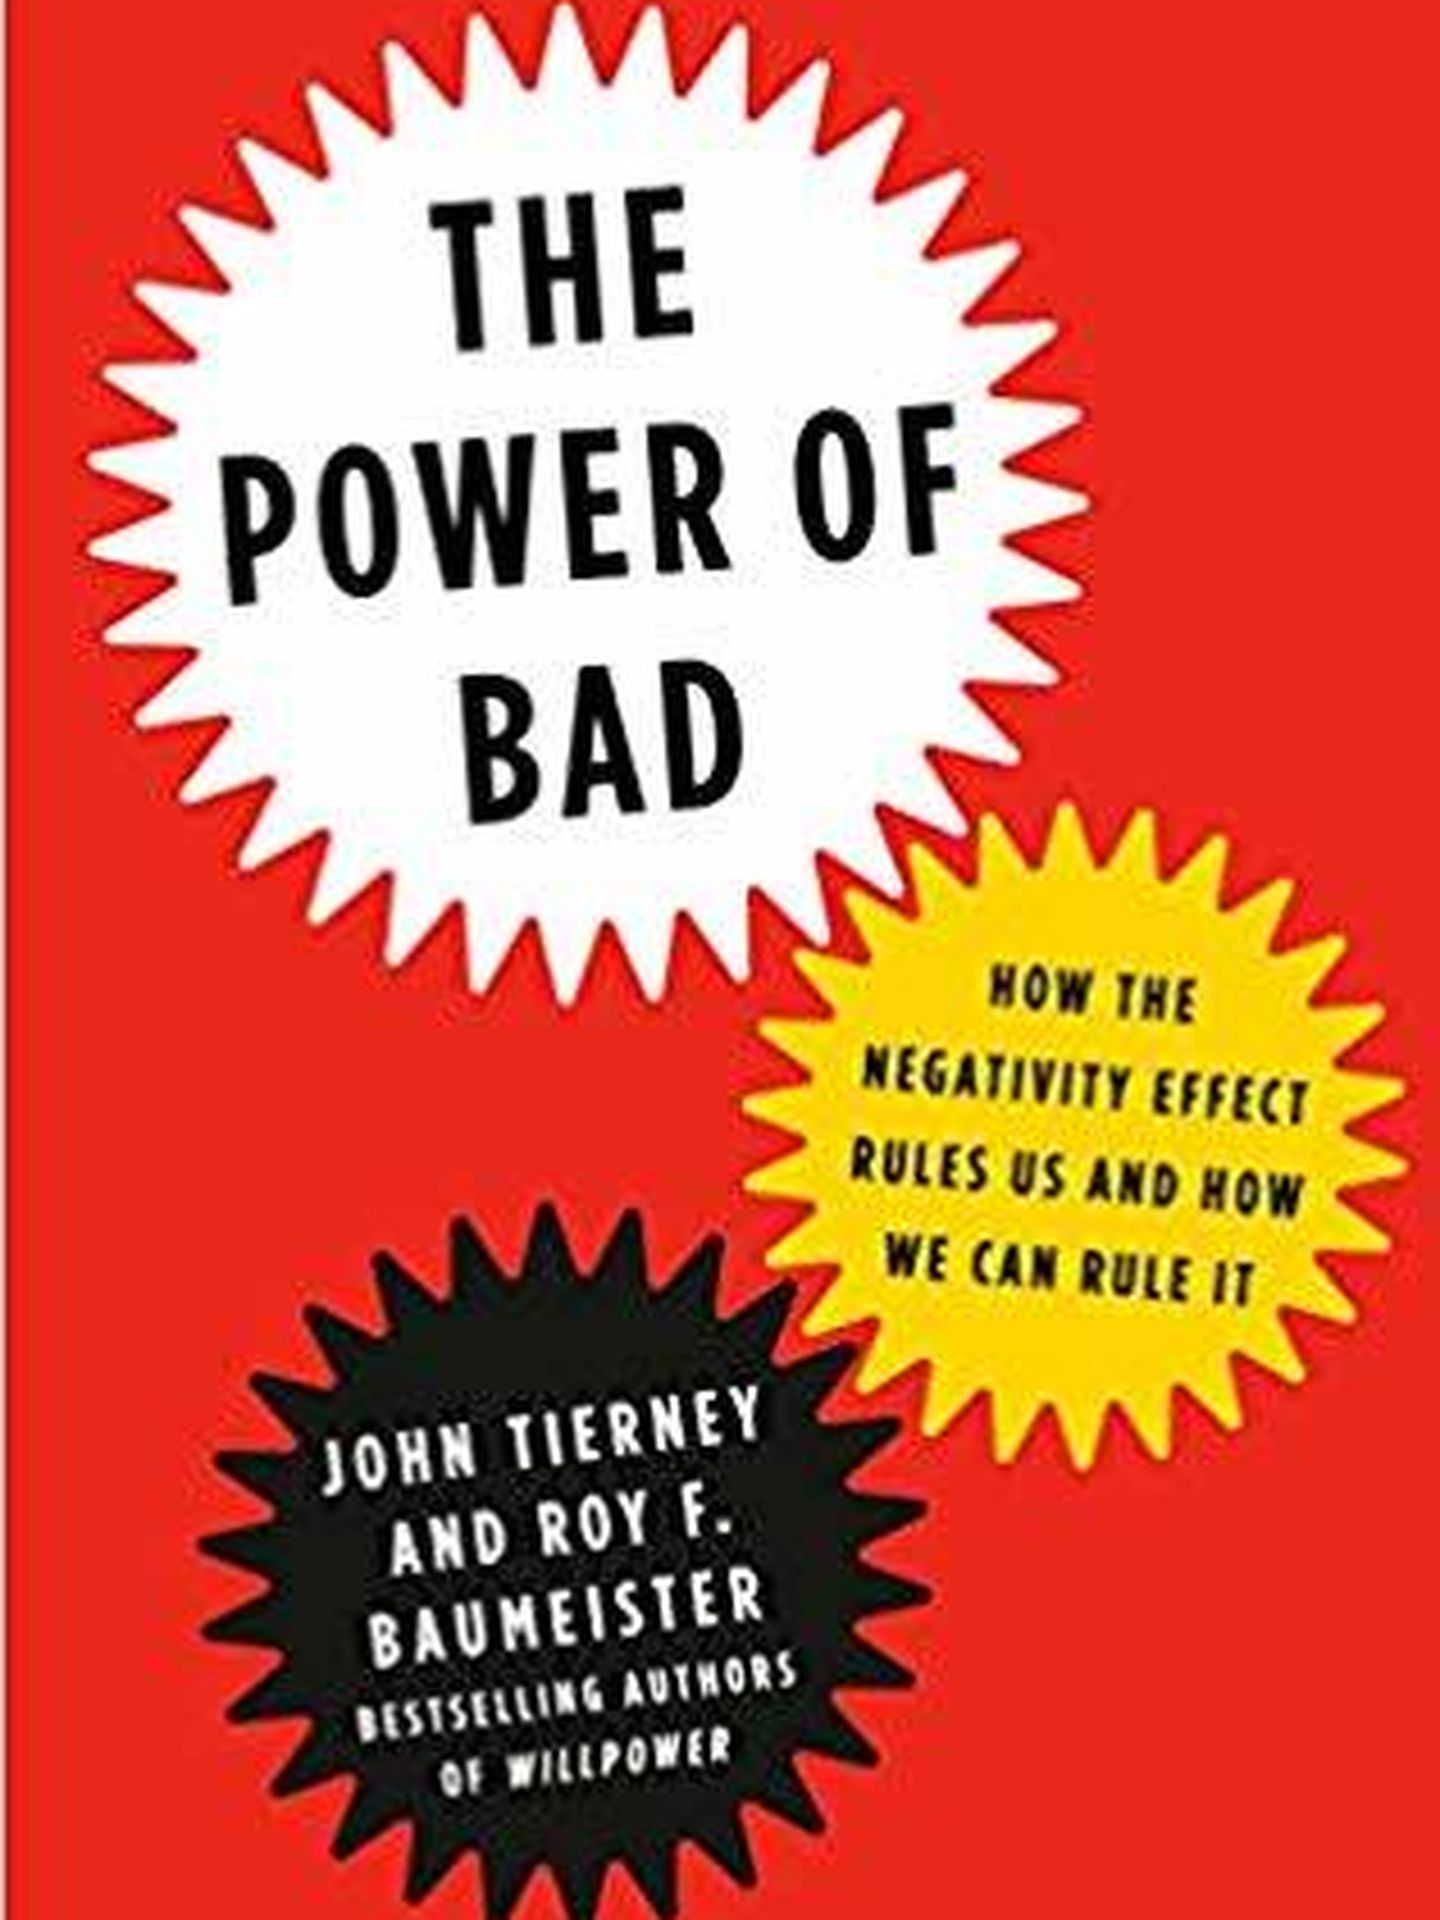 Portada de 'The Power of Bad', de John Tierney y Roy Baumeister. 